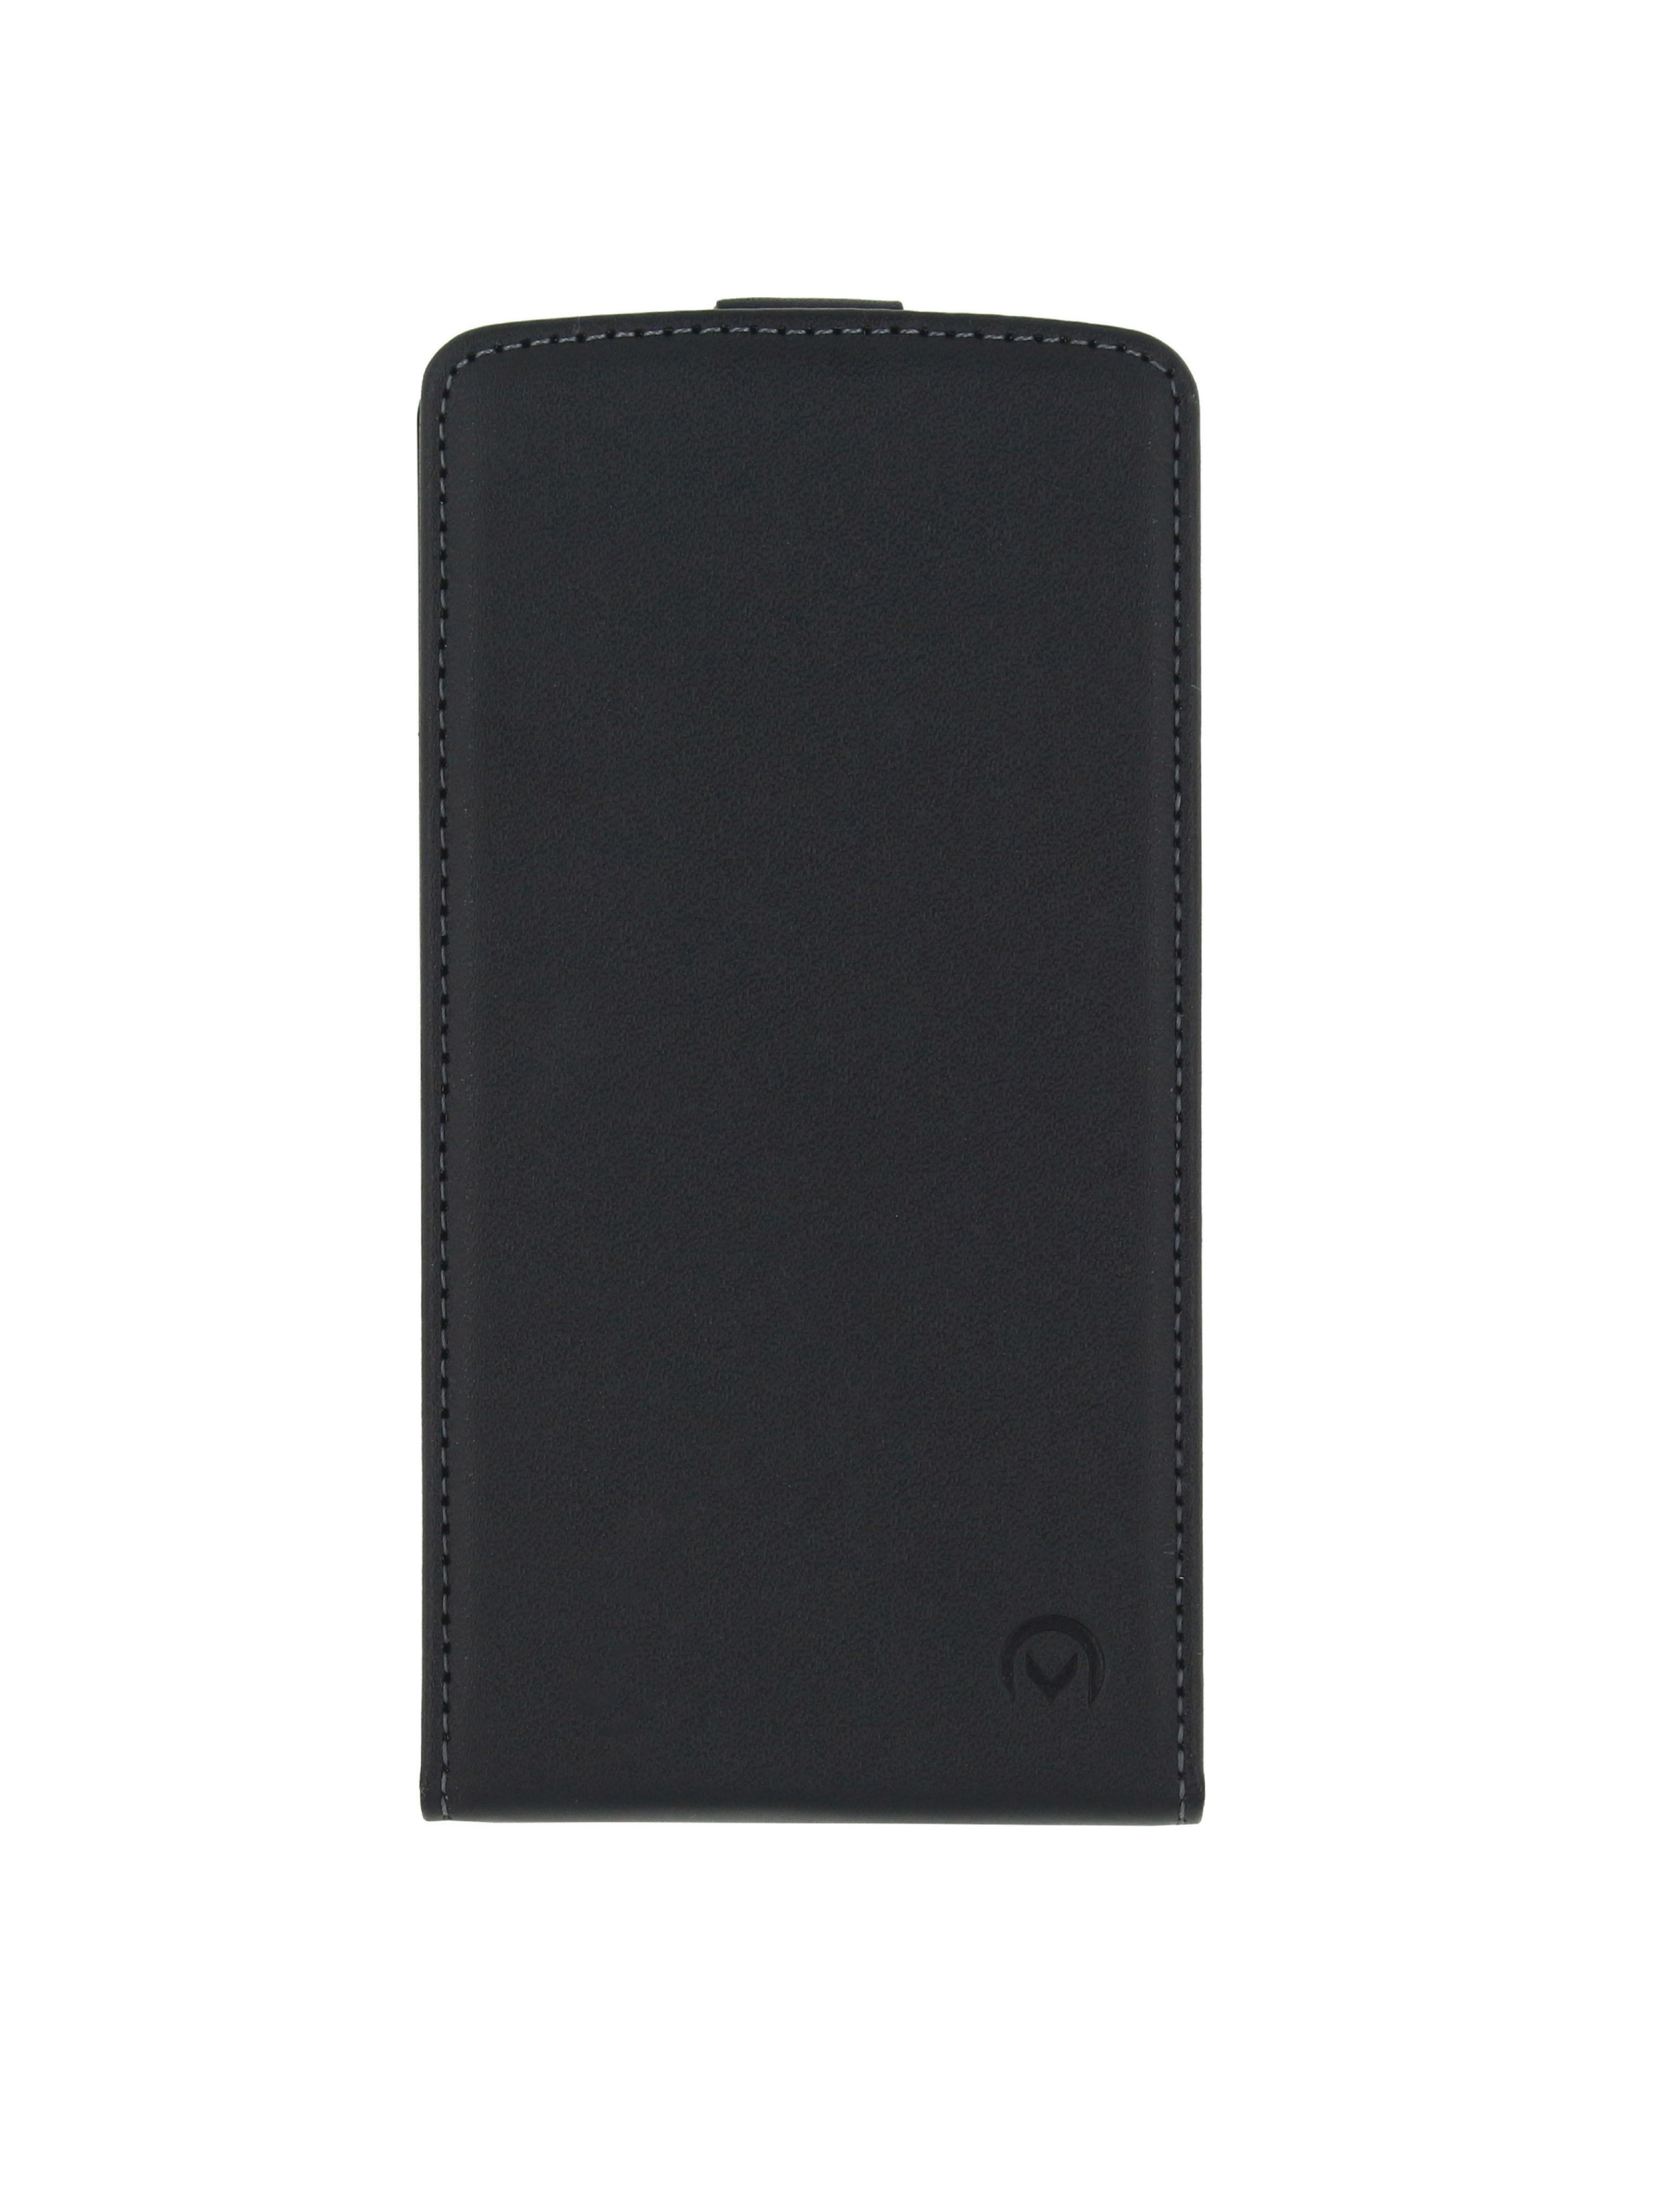 Mobilize MOB-CFCB-LUM630 zwart / Lumia 630/635